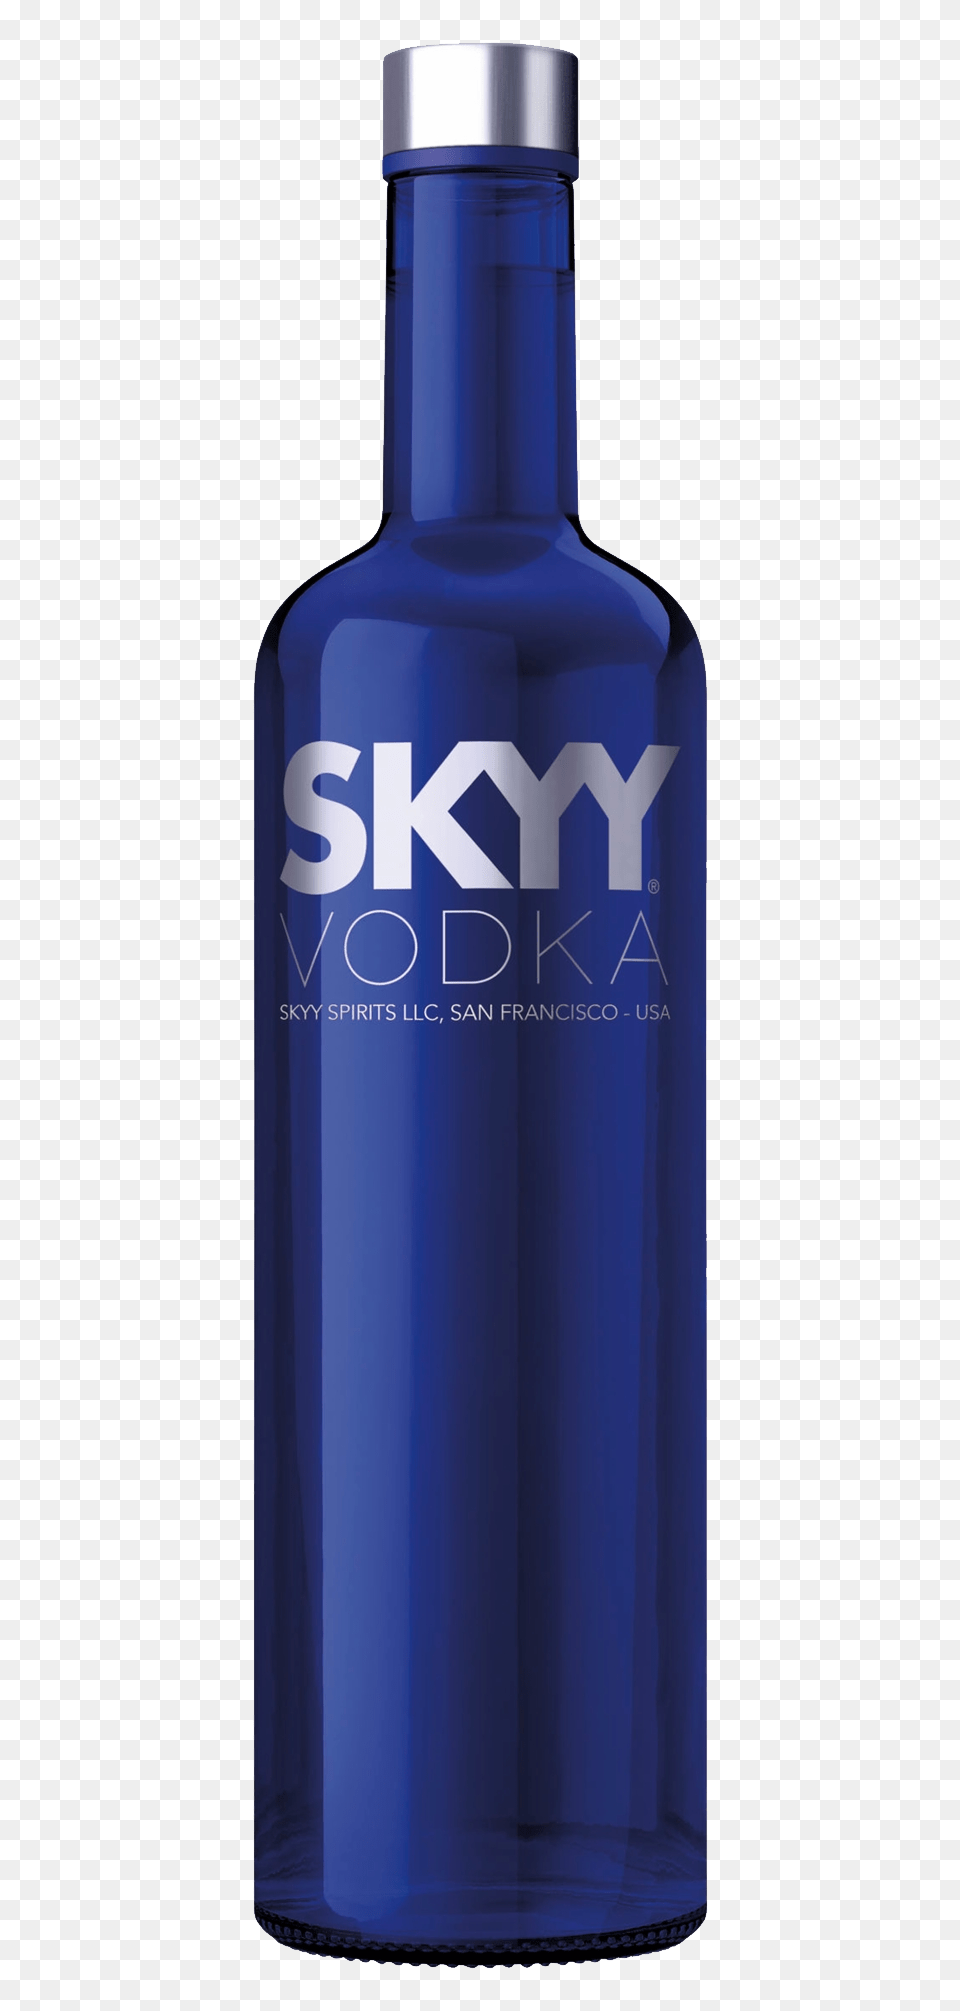 Vodka, Bottle, Shaker, Alcohol, Beverage Png Image